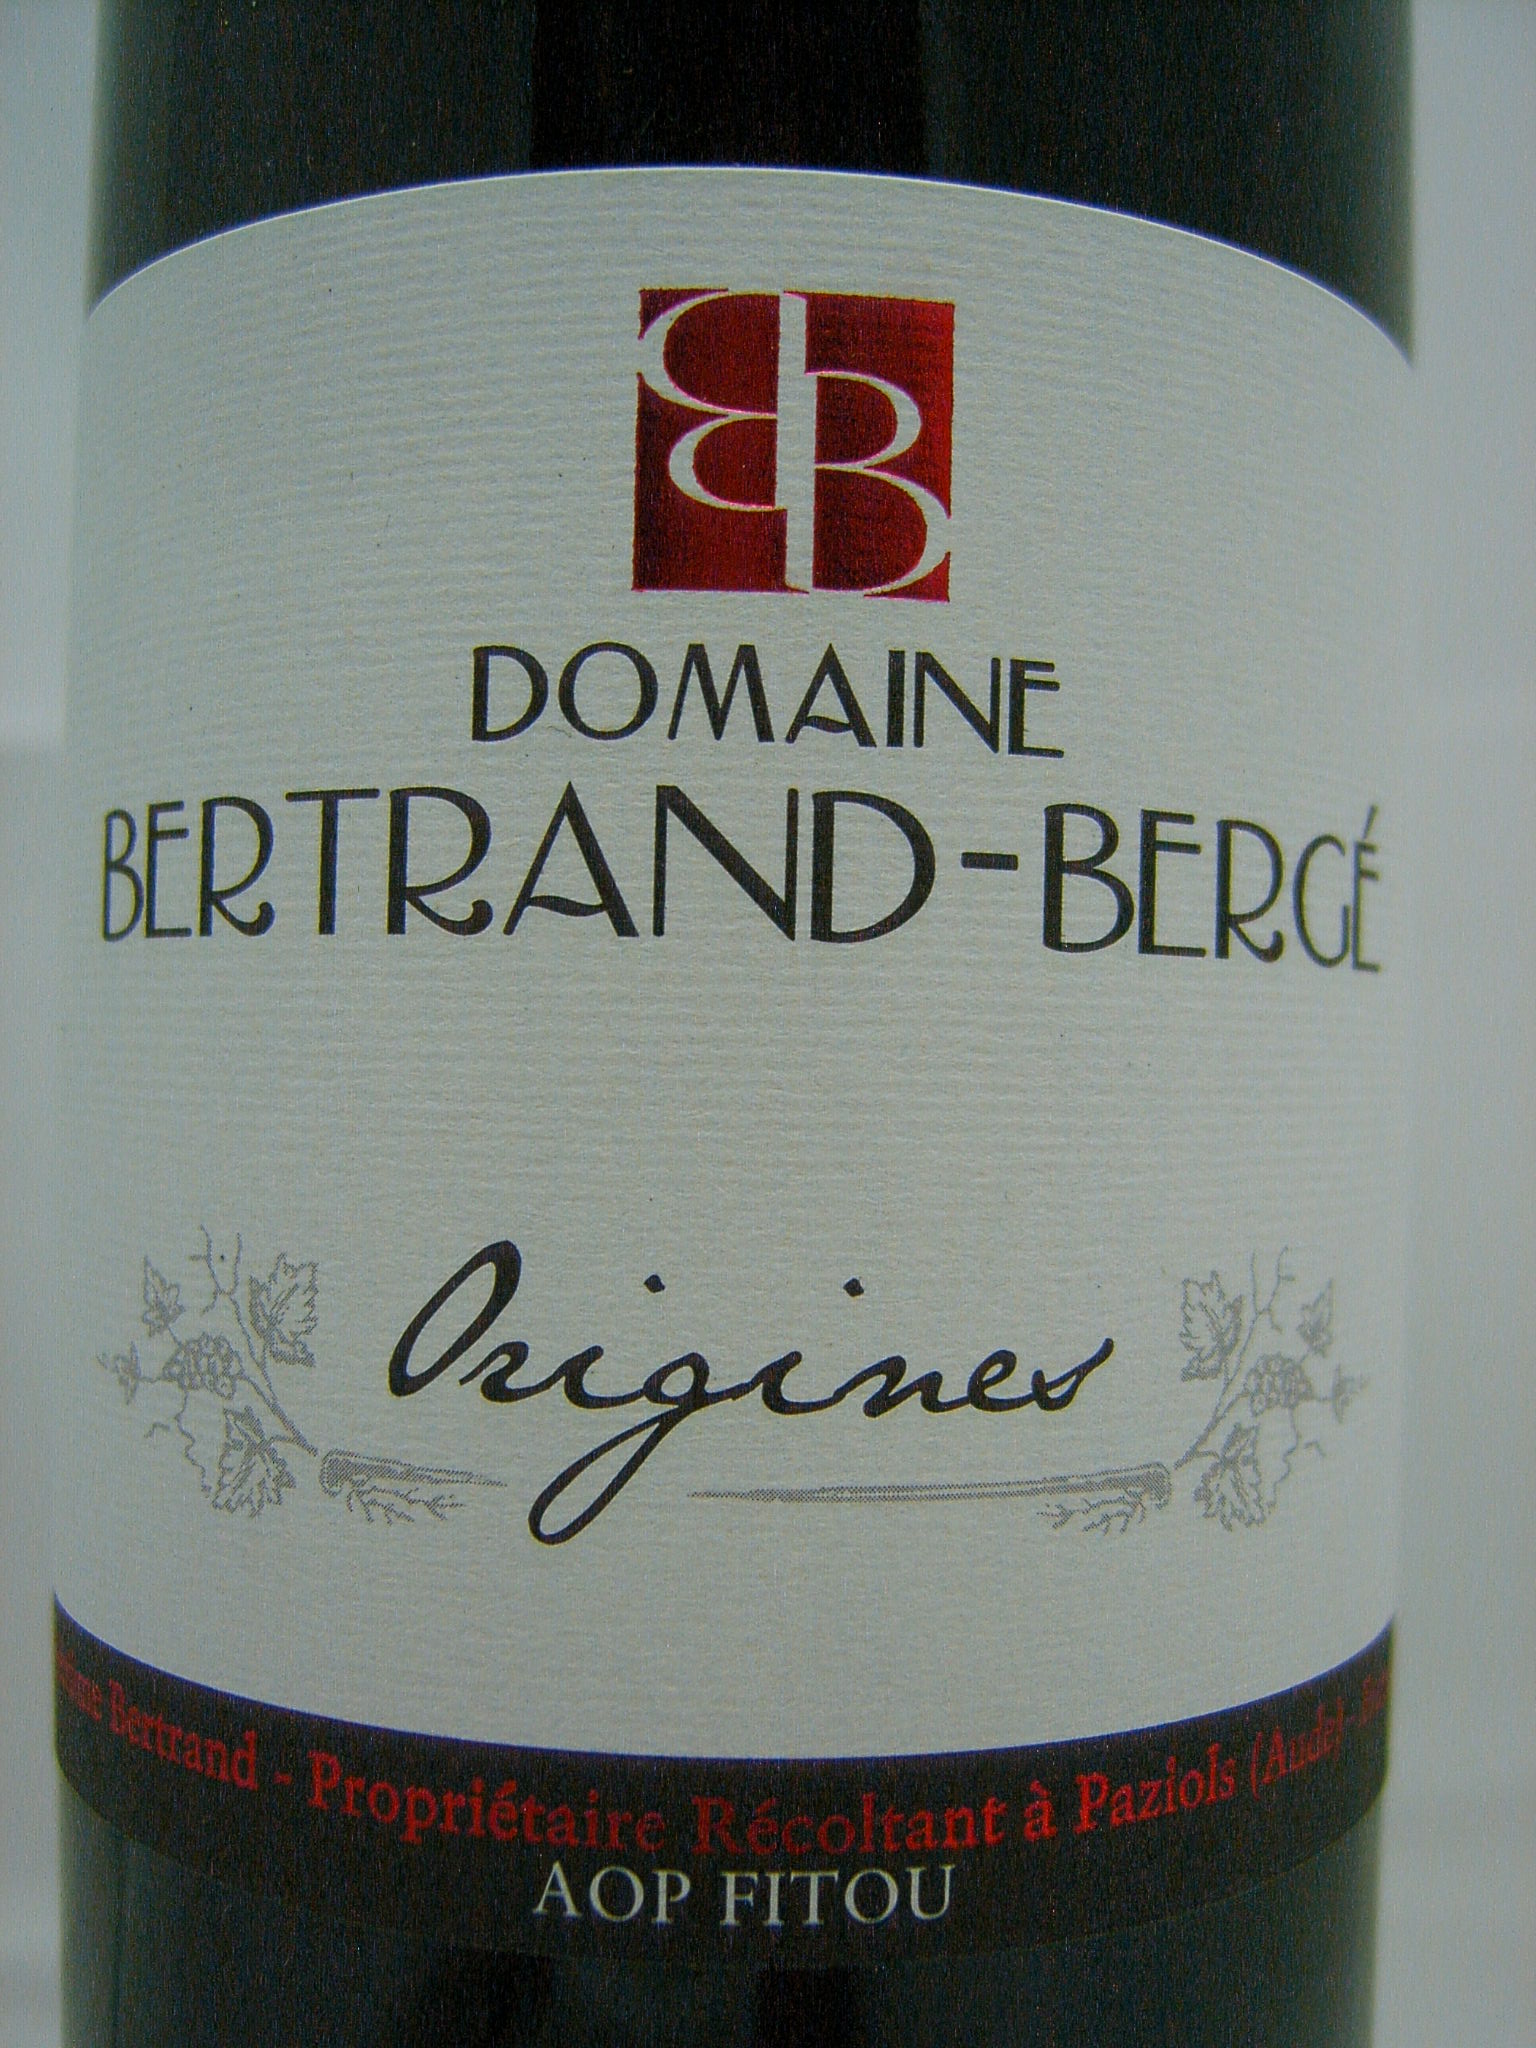 Tour des Vins - Domaine Bertrand Berge Origines 2020, AOP Fitou, Rotwein,  trocken, 0,75l